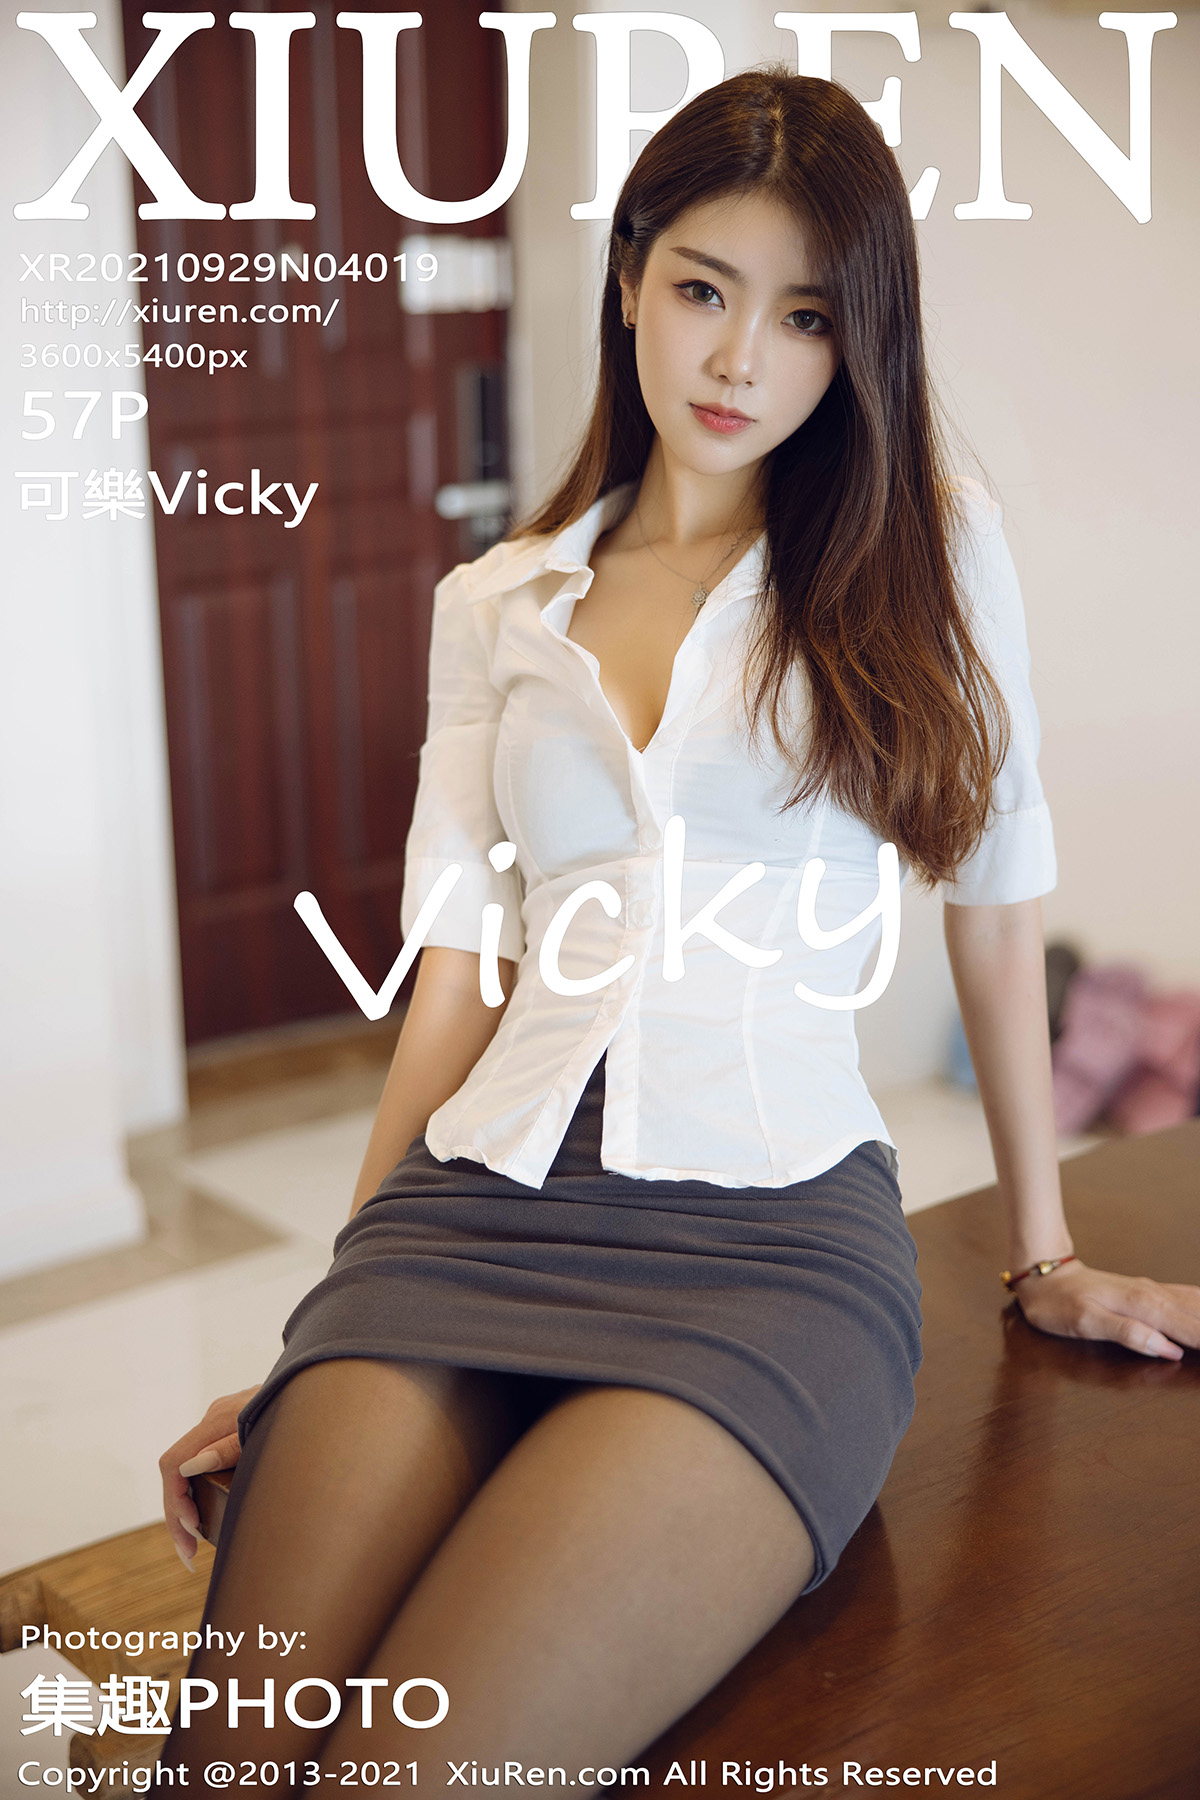 秀人 [XIUREN] 2021.09.29 可樂Vicky